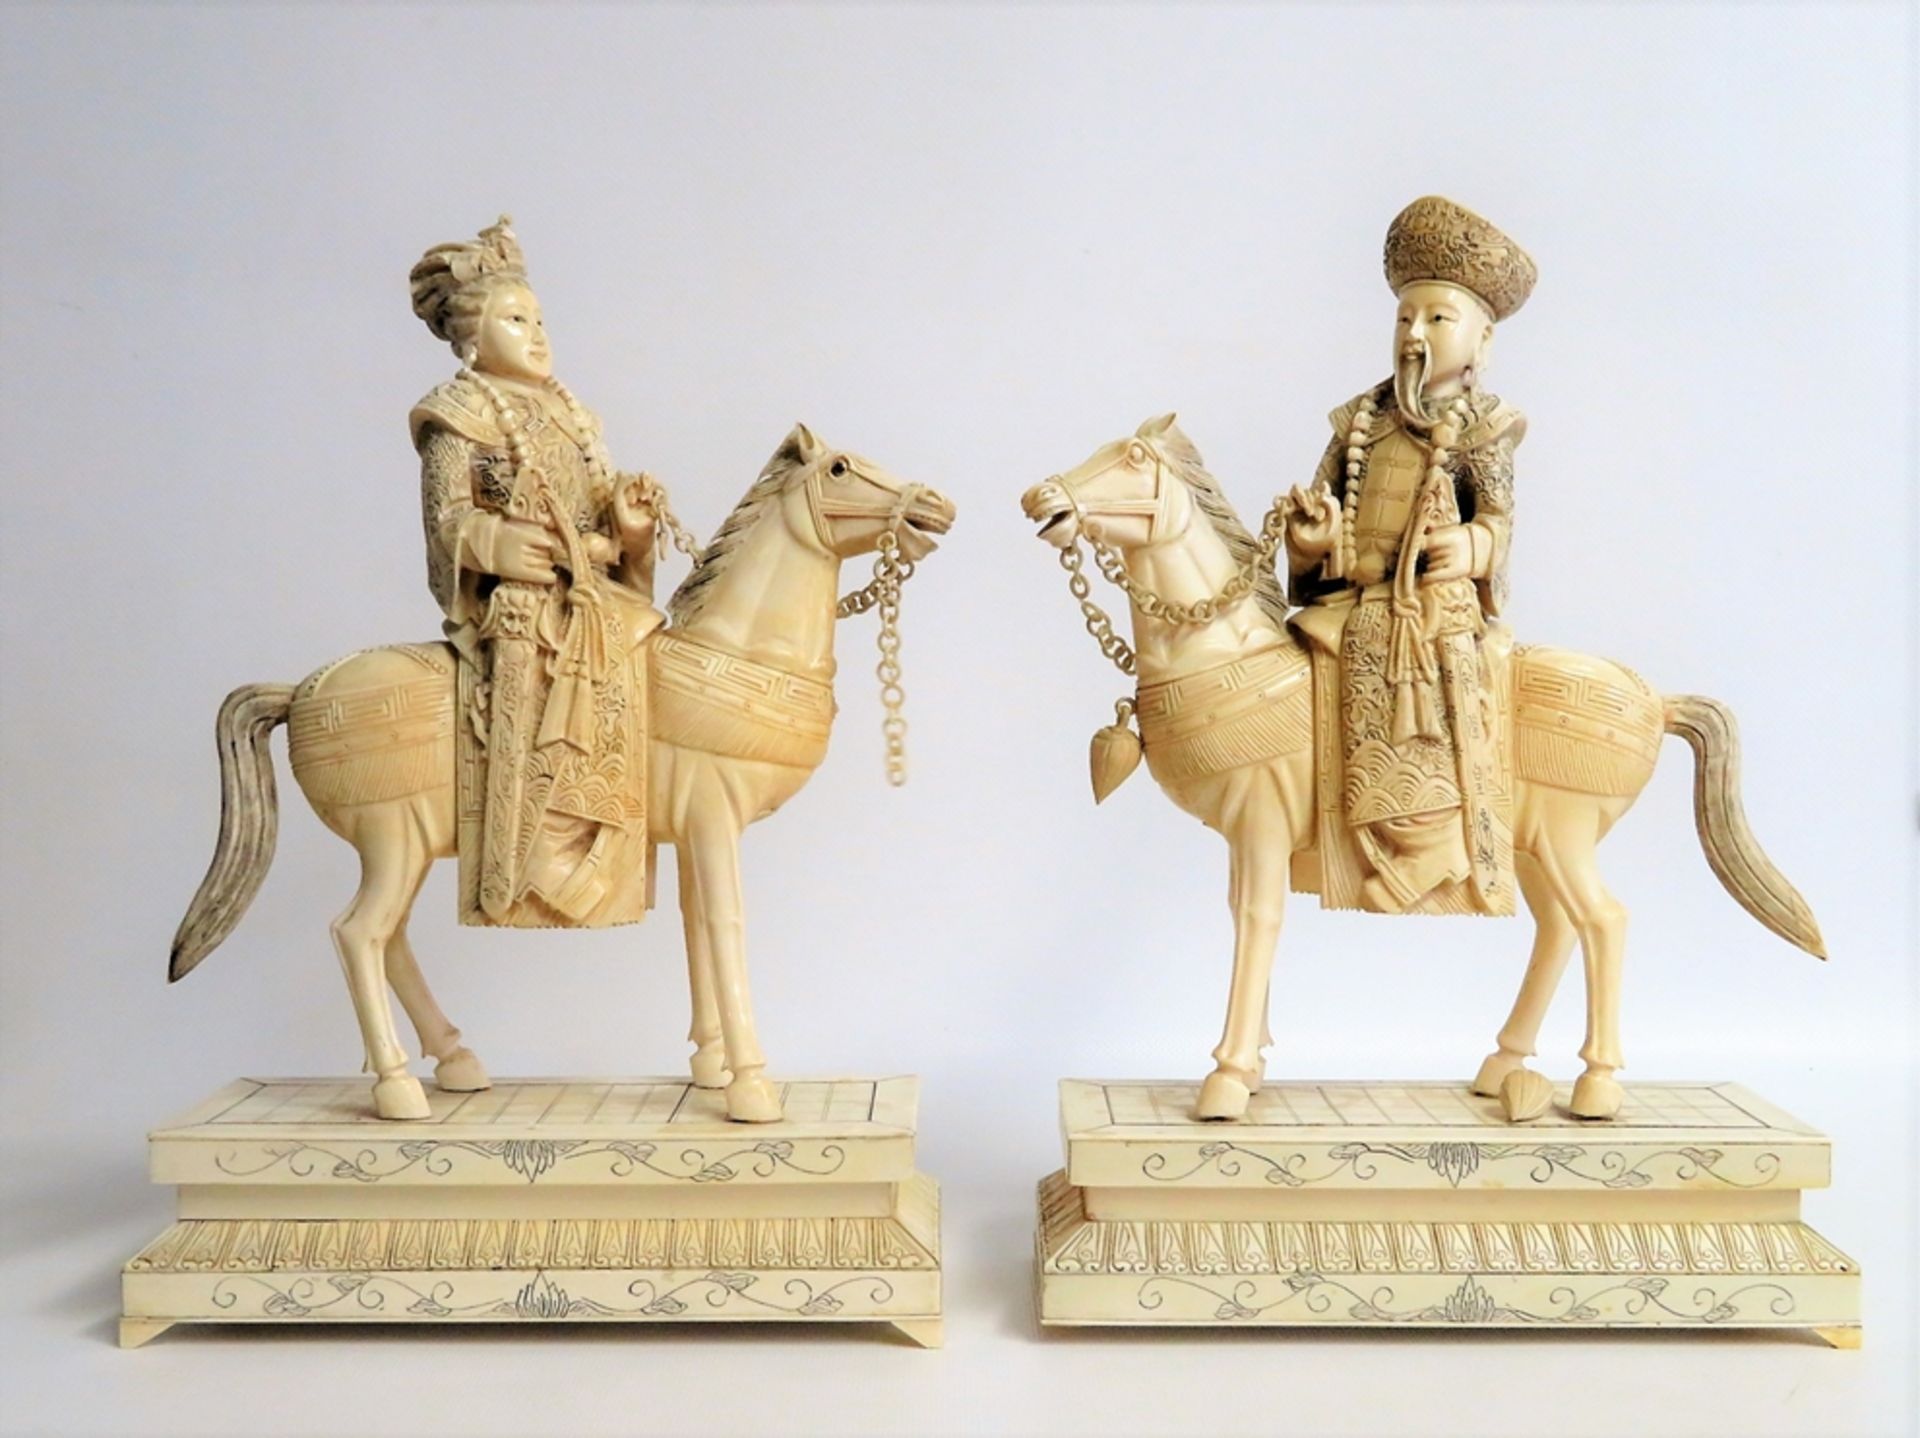 Kaiserpaar zu Pferd, China, um 1900, Elfenbein, fein beschnitzt, sign., ein Standfüßchen fehlt, kle